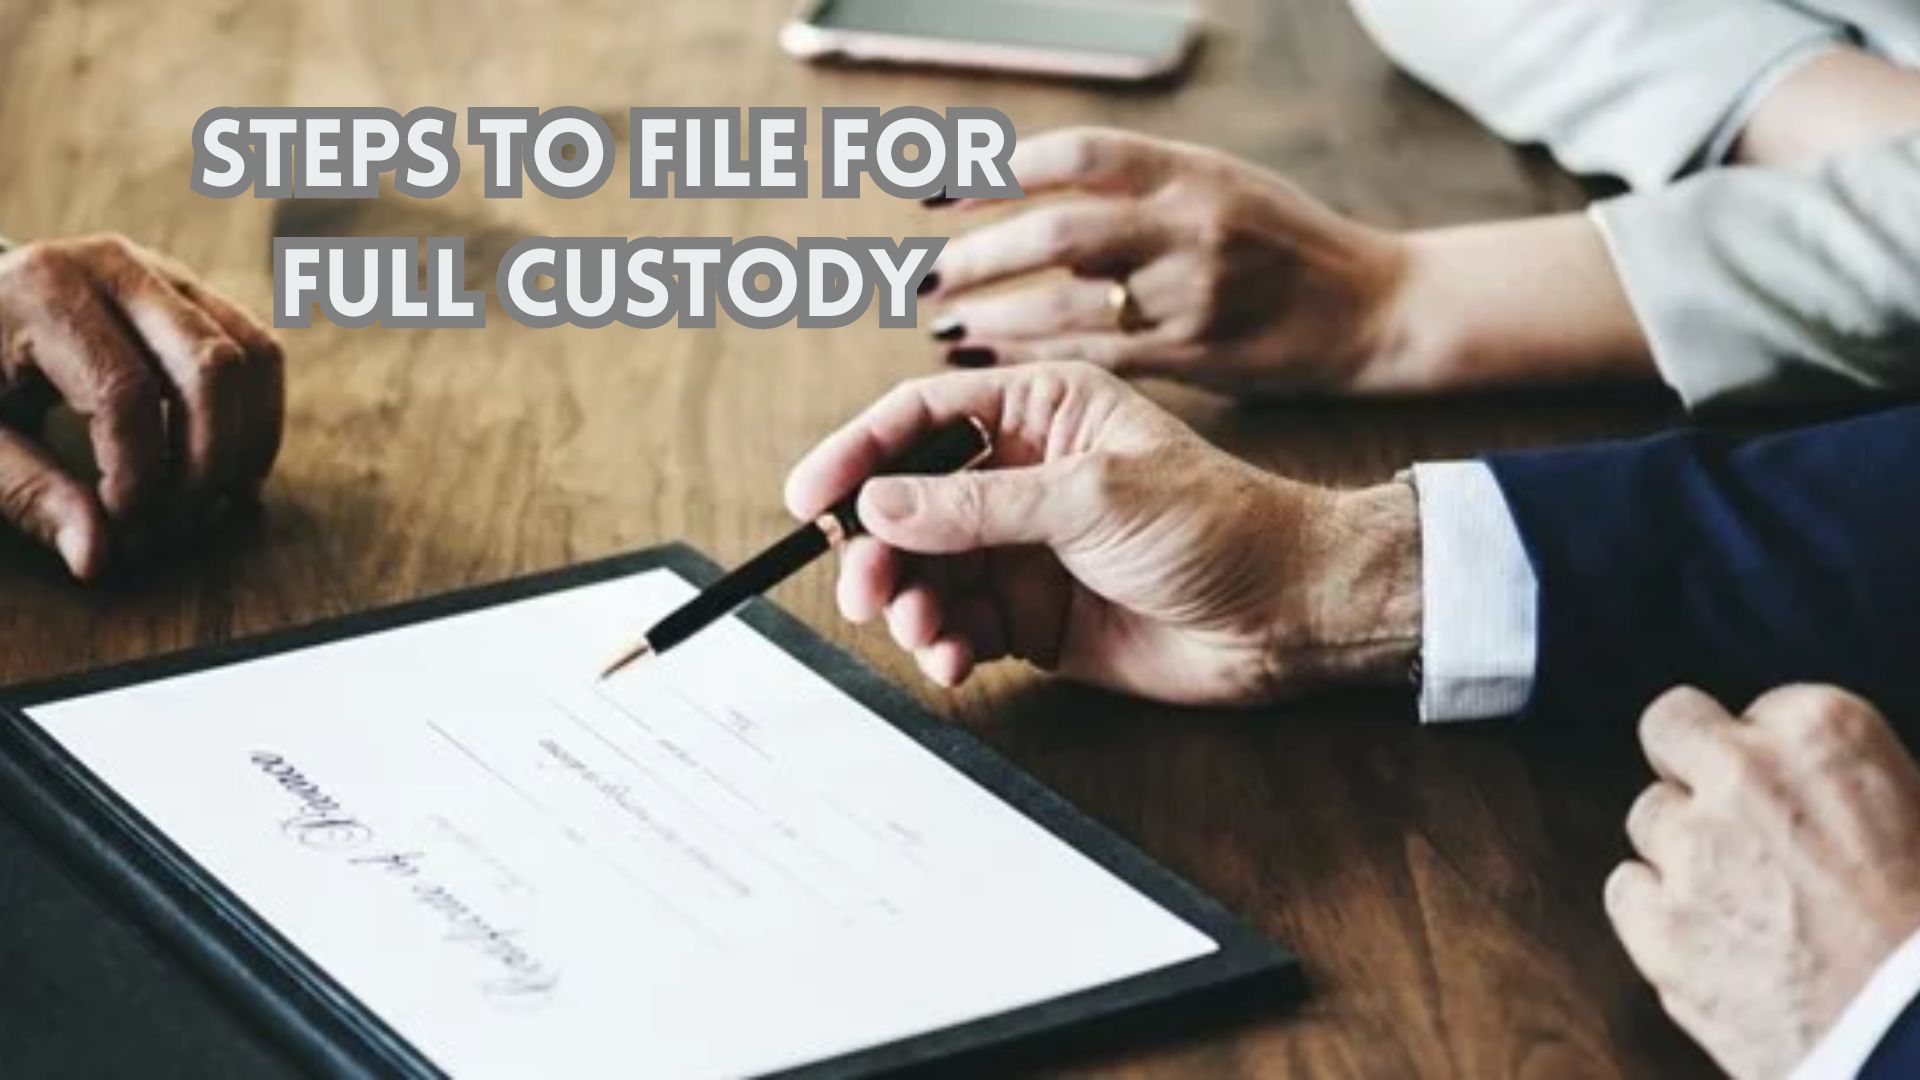 Steps to File for Full Custody.